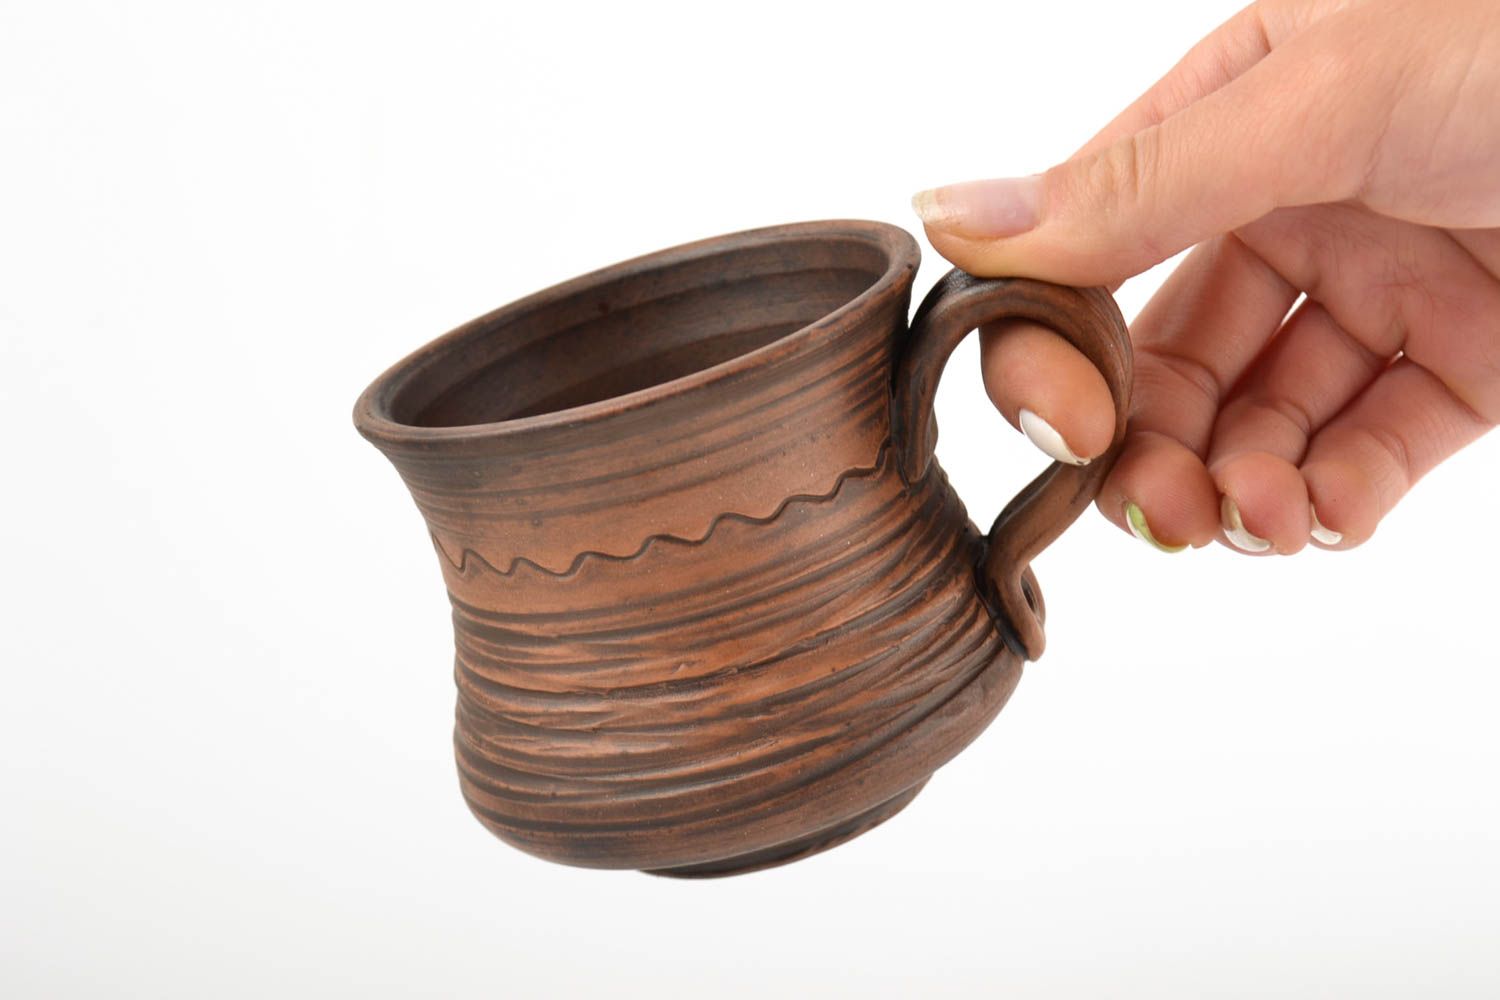  Красивая чайная чашка ручной работы оригинальная кружка глиняная .